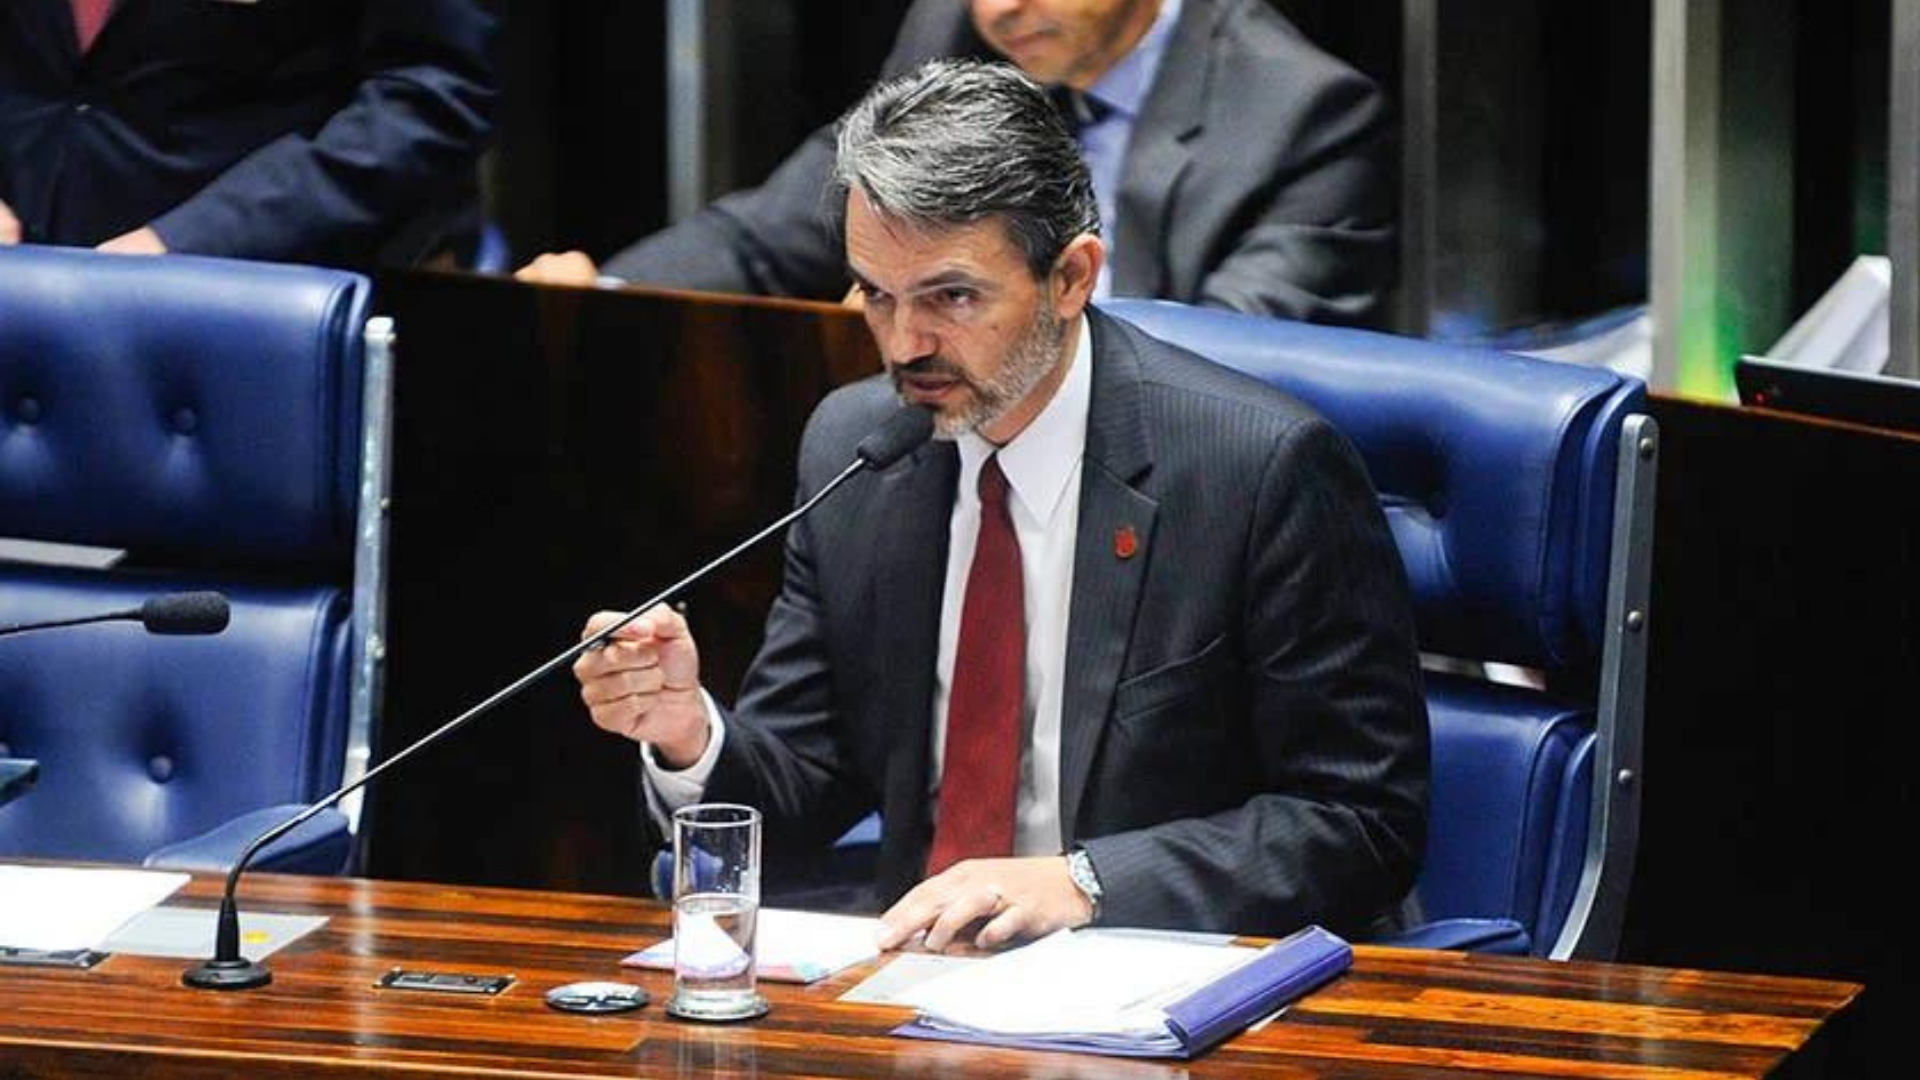 Procurador detona pedido de suspeição em caso contra Moro. Foto do procurador Julio Oliveira com terno preto, gravata vermelha, barba e cabelos grisalhos.